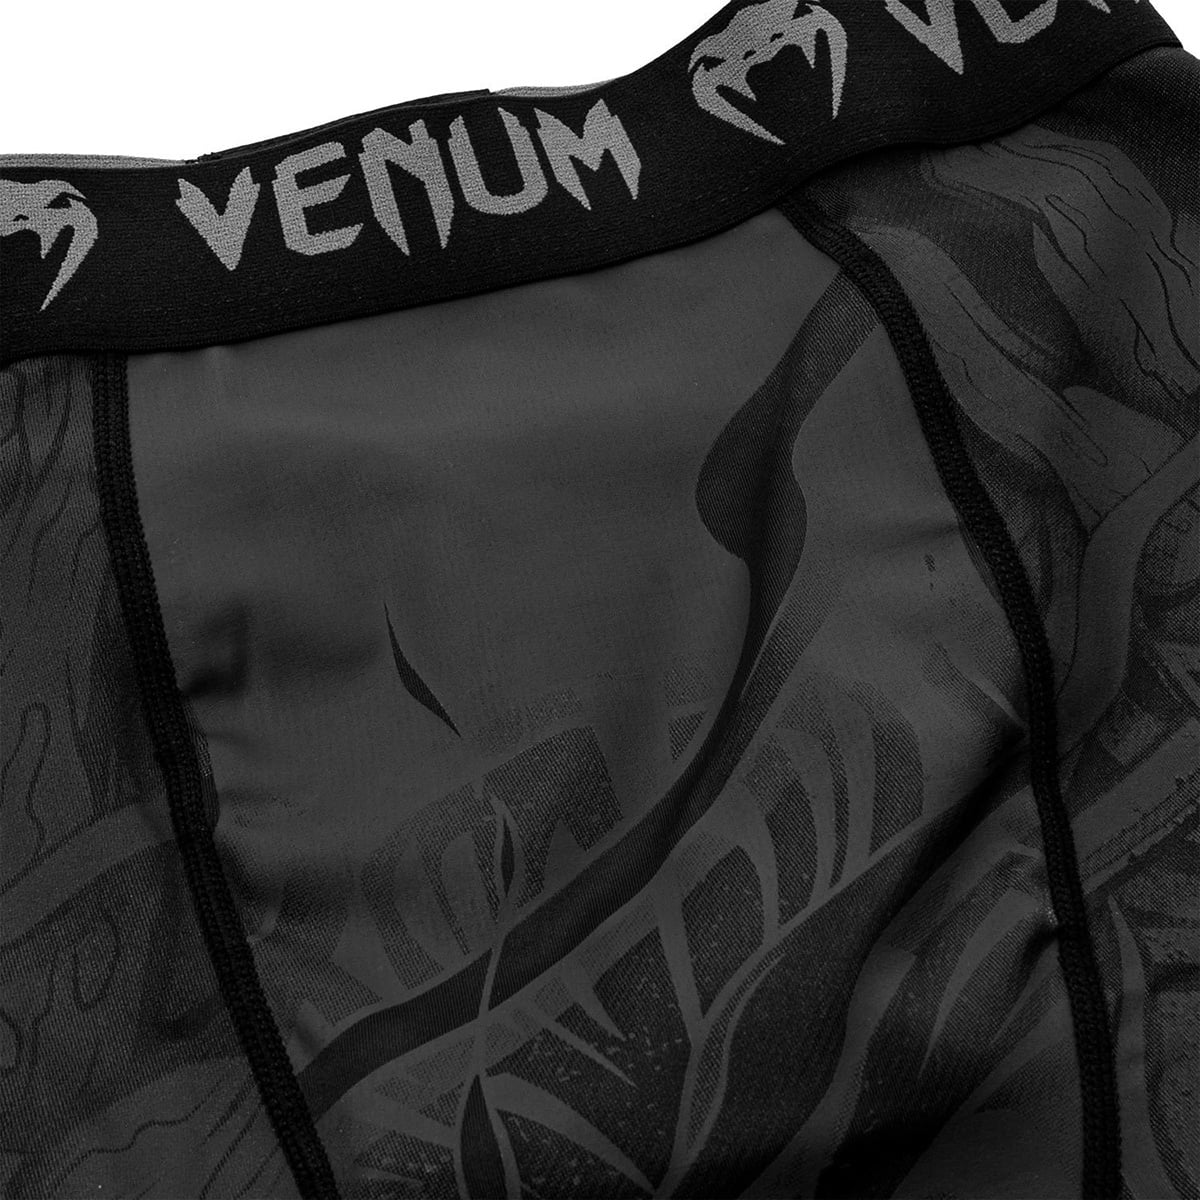 Details about   Venum Devil MMA Compression Shorts Black/Black 